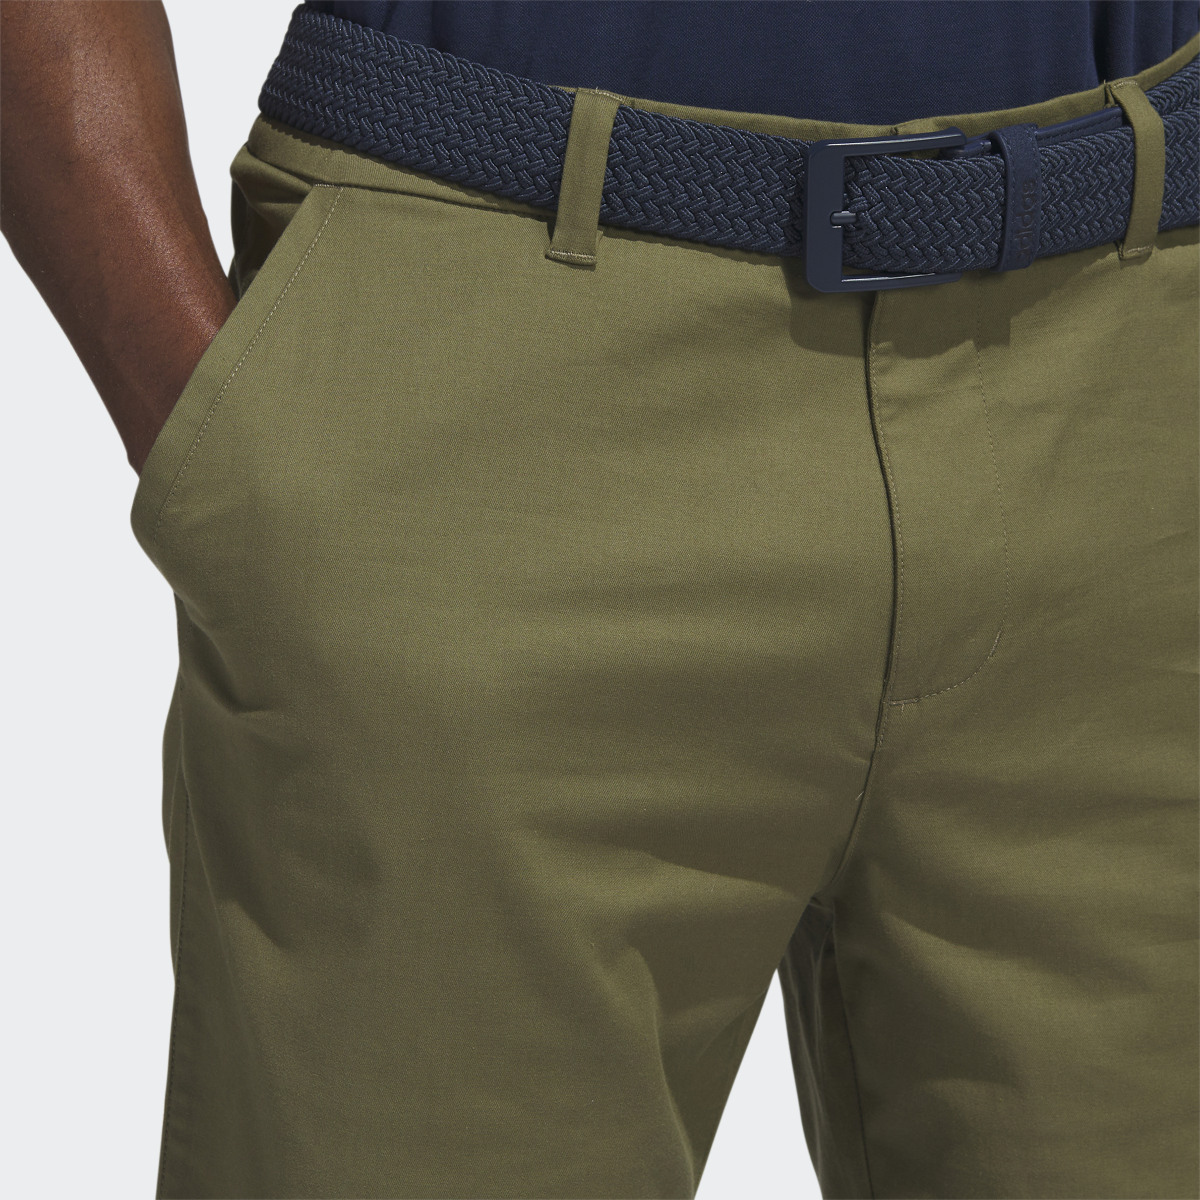 Adidas Go-To 9-Inch Golf Shorts. 7